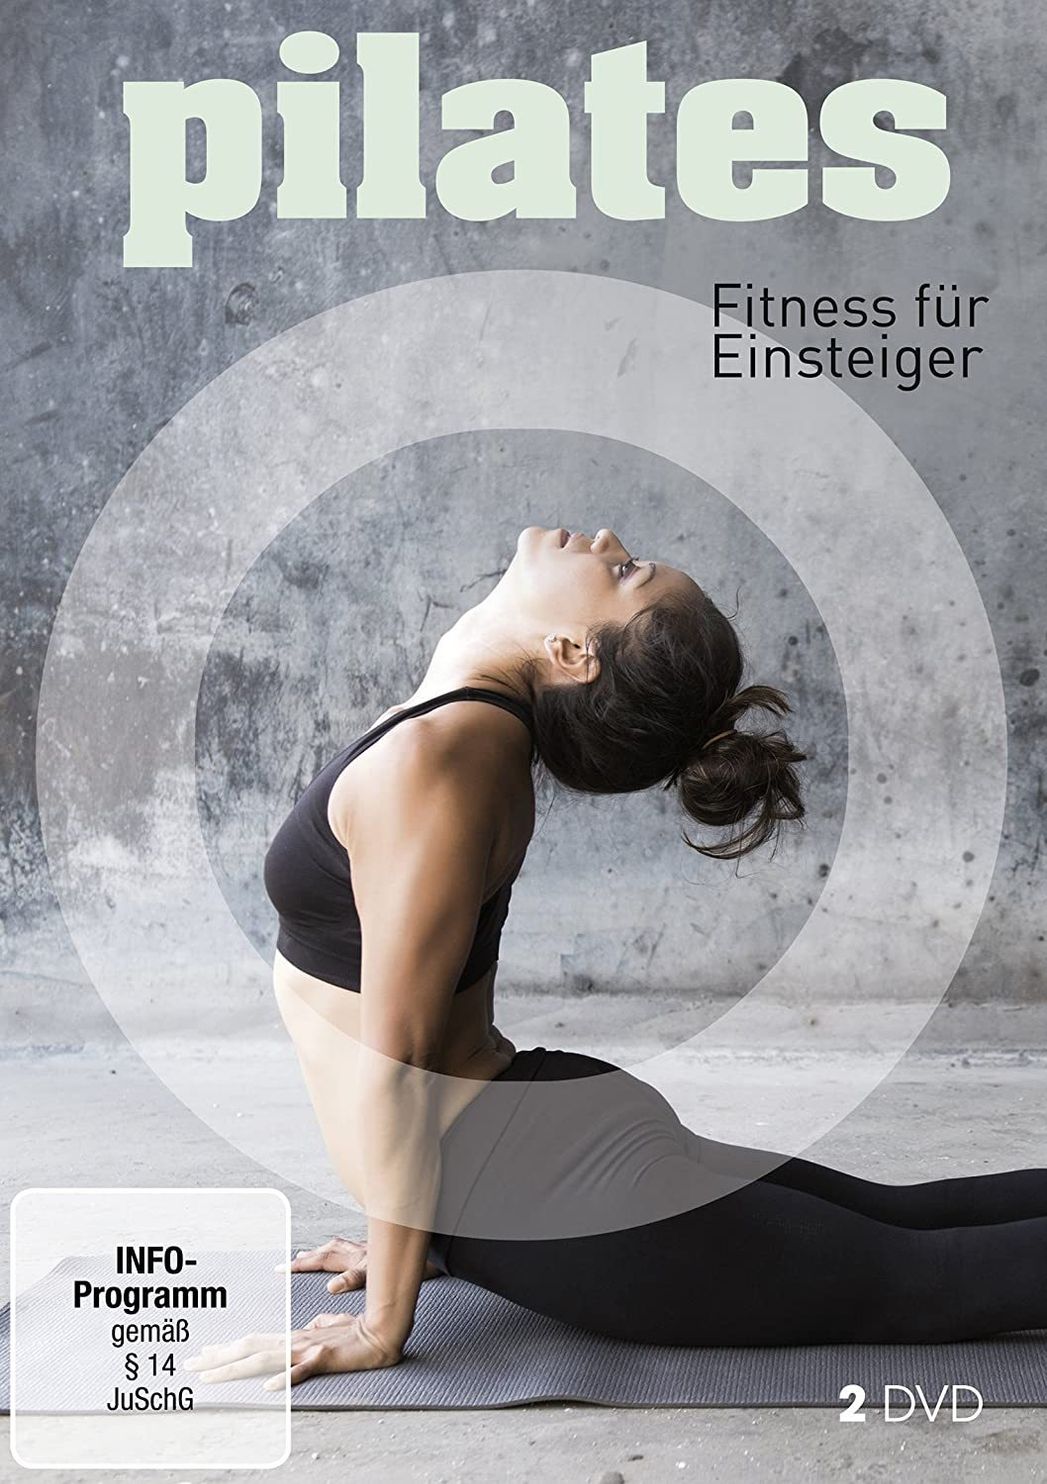 Pilates - Fitness für Einsteiger DVD bei Weltbild.de bestellen